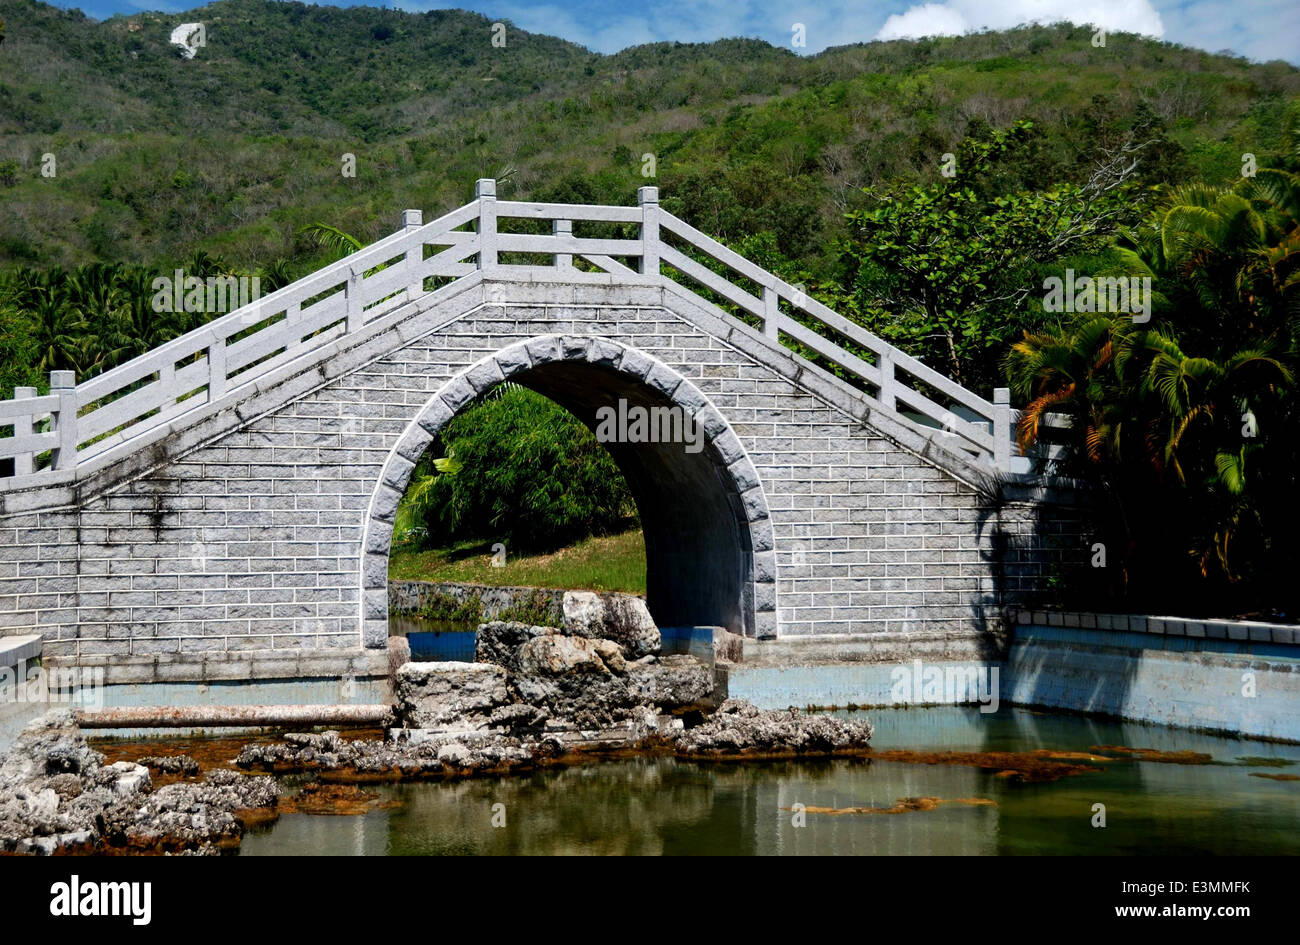 San Ya, Chine : un pont en pierre avec un arc haut enjambe un cours d'eau dans les jardins tropicaux à la Temple de Nanshan Sanya Banque D'Images